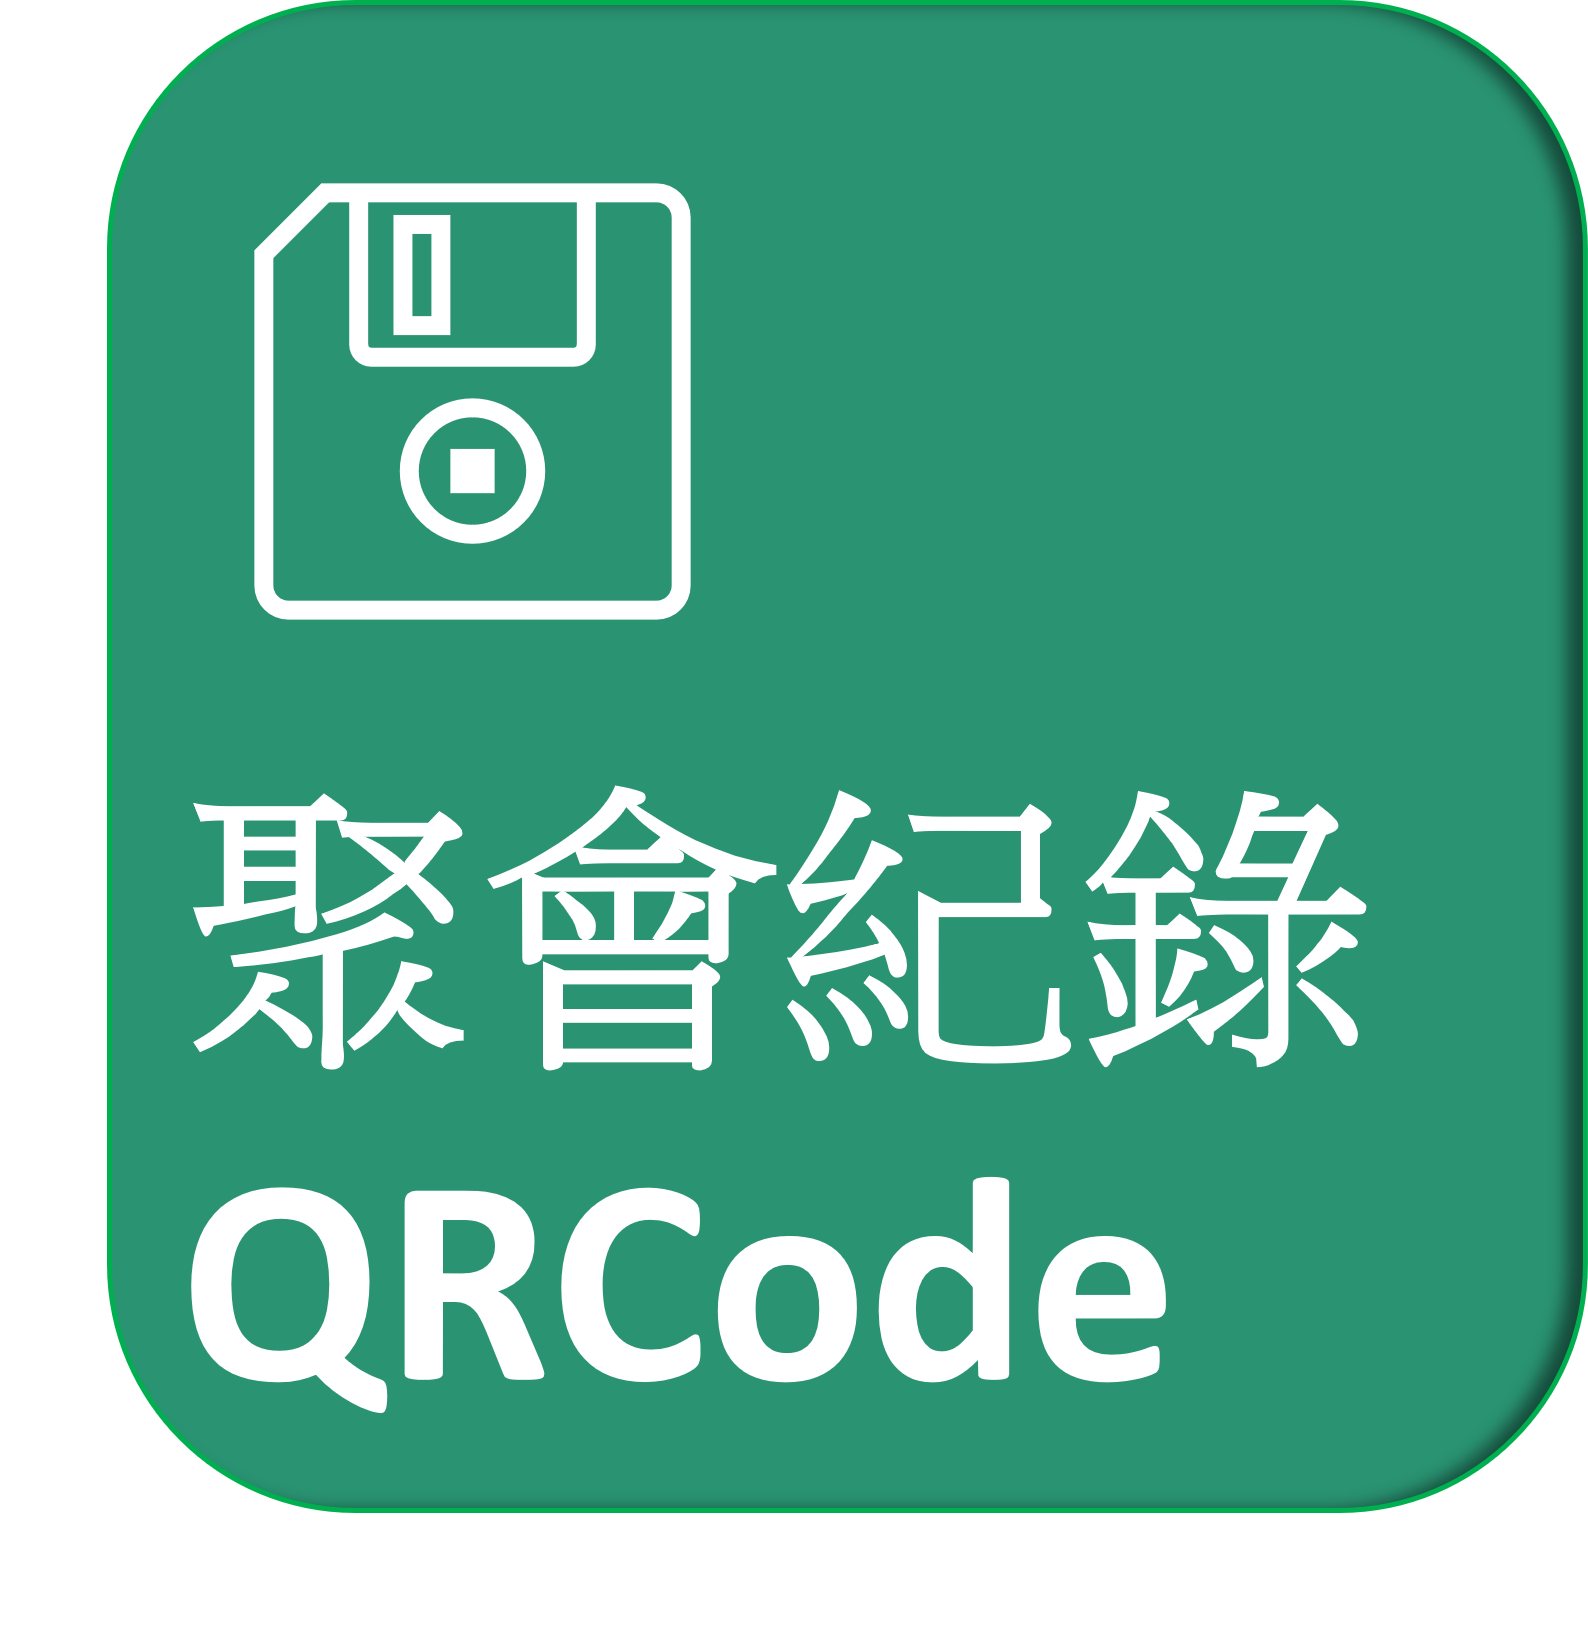 聚會紀錄QRCode